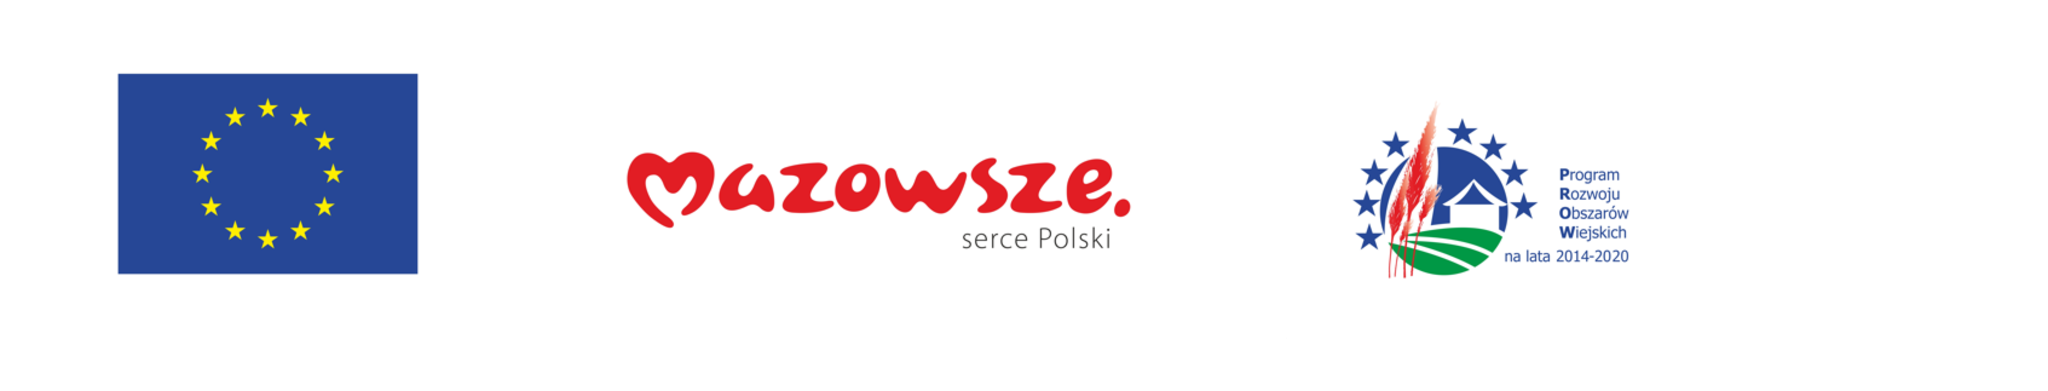 ciąg logotypów: flaga Unii Europejskiej, Mazowsze serce Polski, Program Rozwoju Obszarów Wiejskich